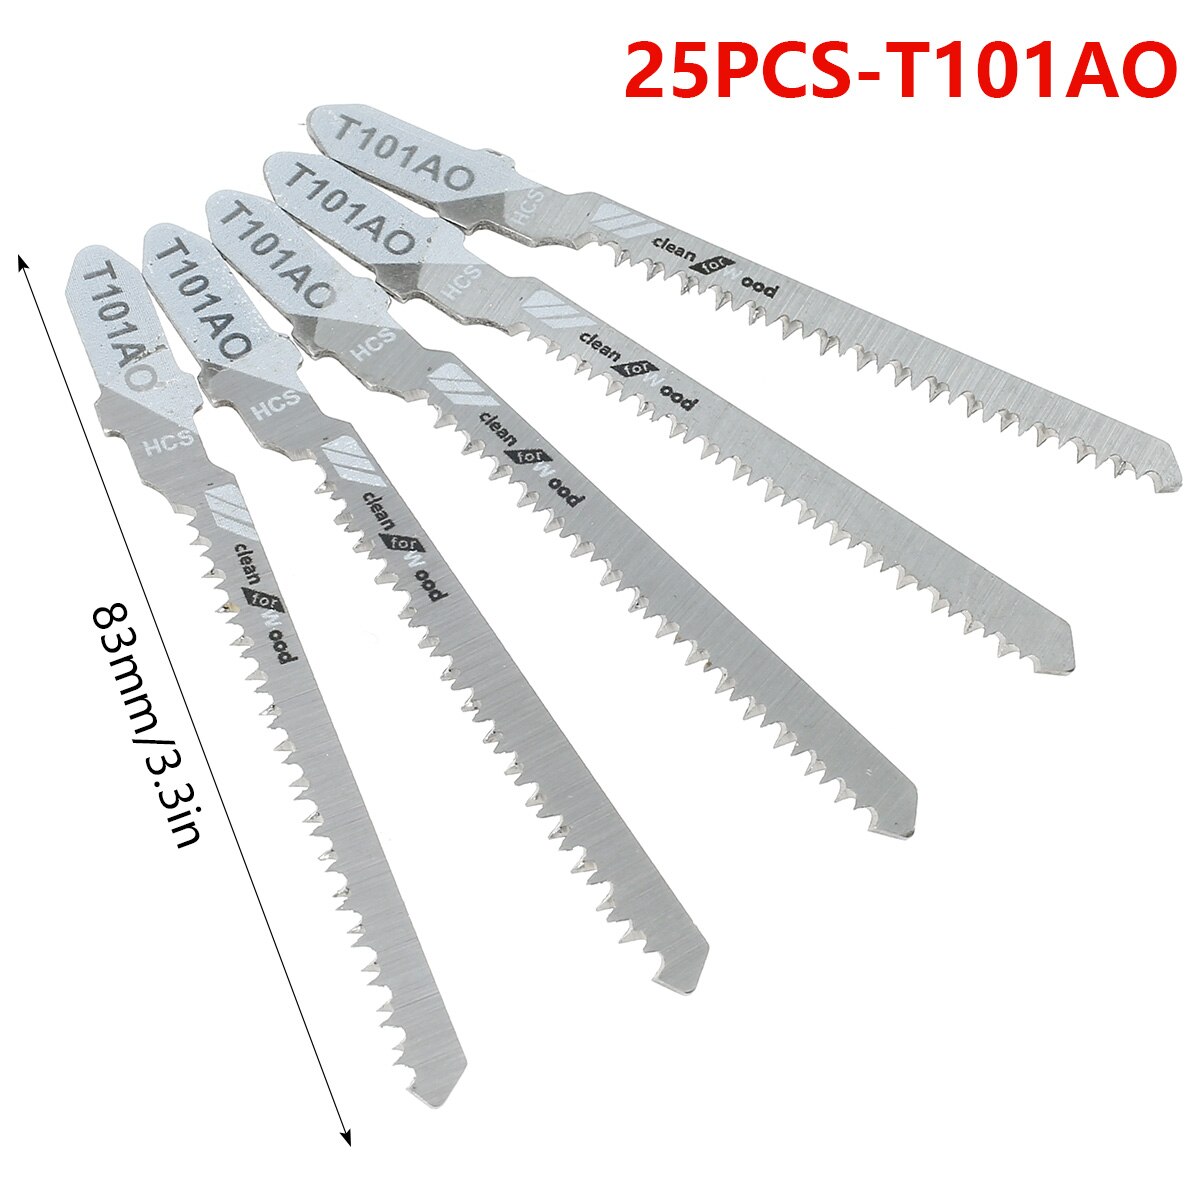 25 Stuks Jig Zaagblad Set Hcs Zaagbladen T-Schacht Snelle Cut Down Jigsaw Blade Jig Saw Cutter accessoires T101AO /T101B /T111C/T101BR: 25PCS T101AO 83mm